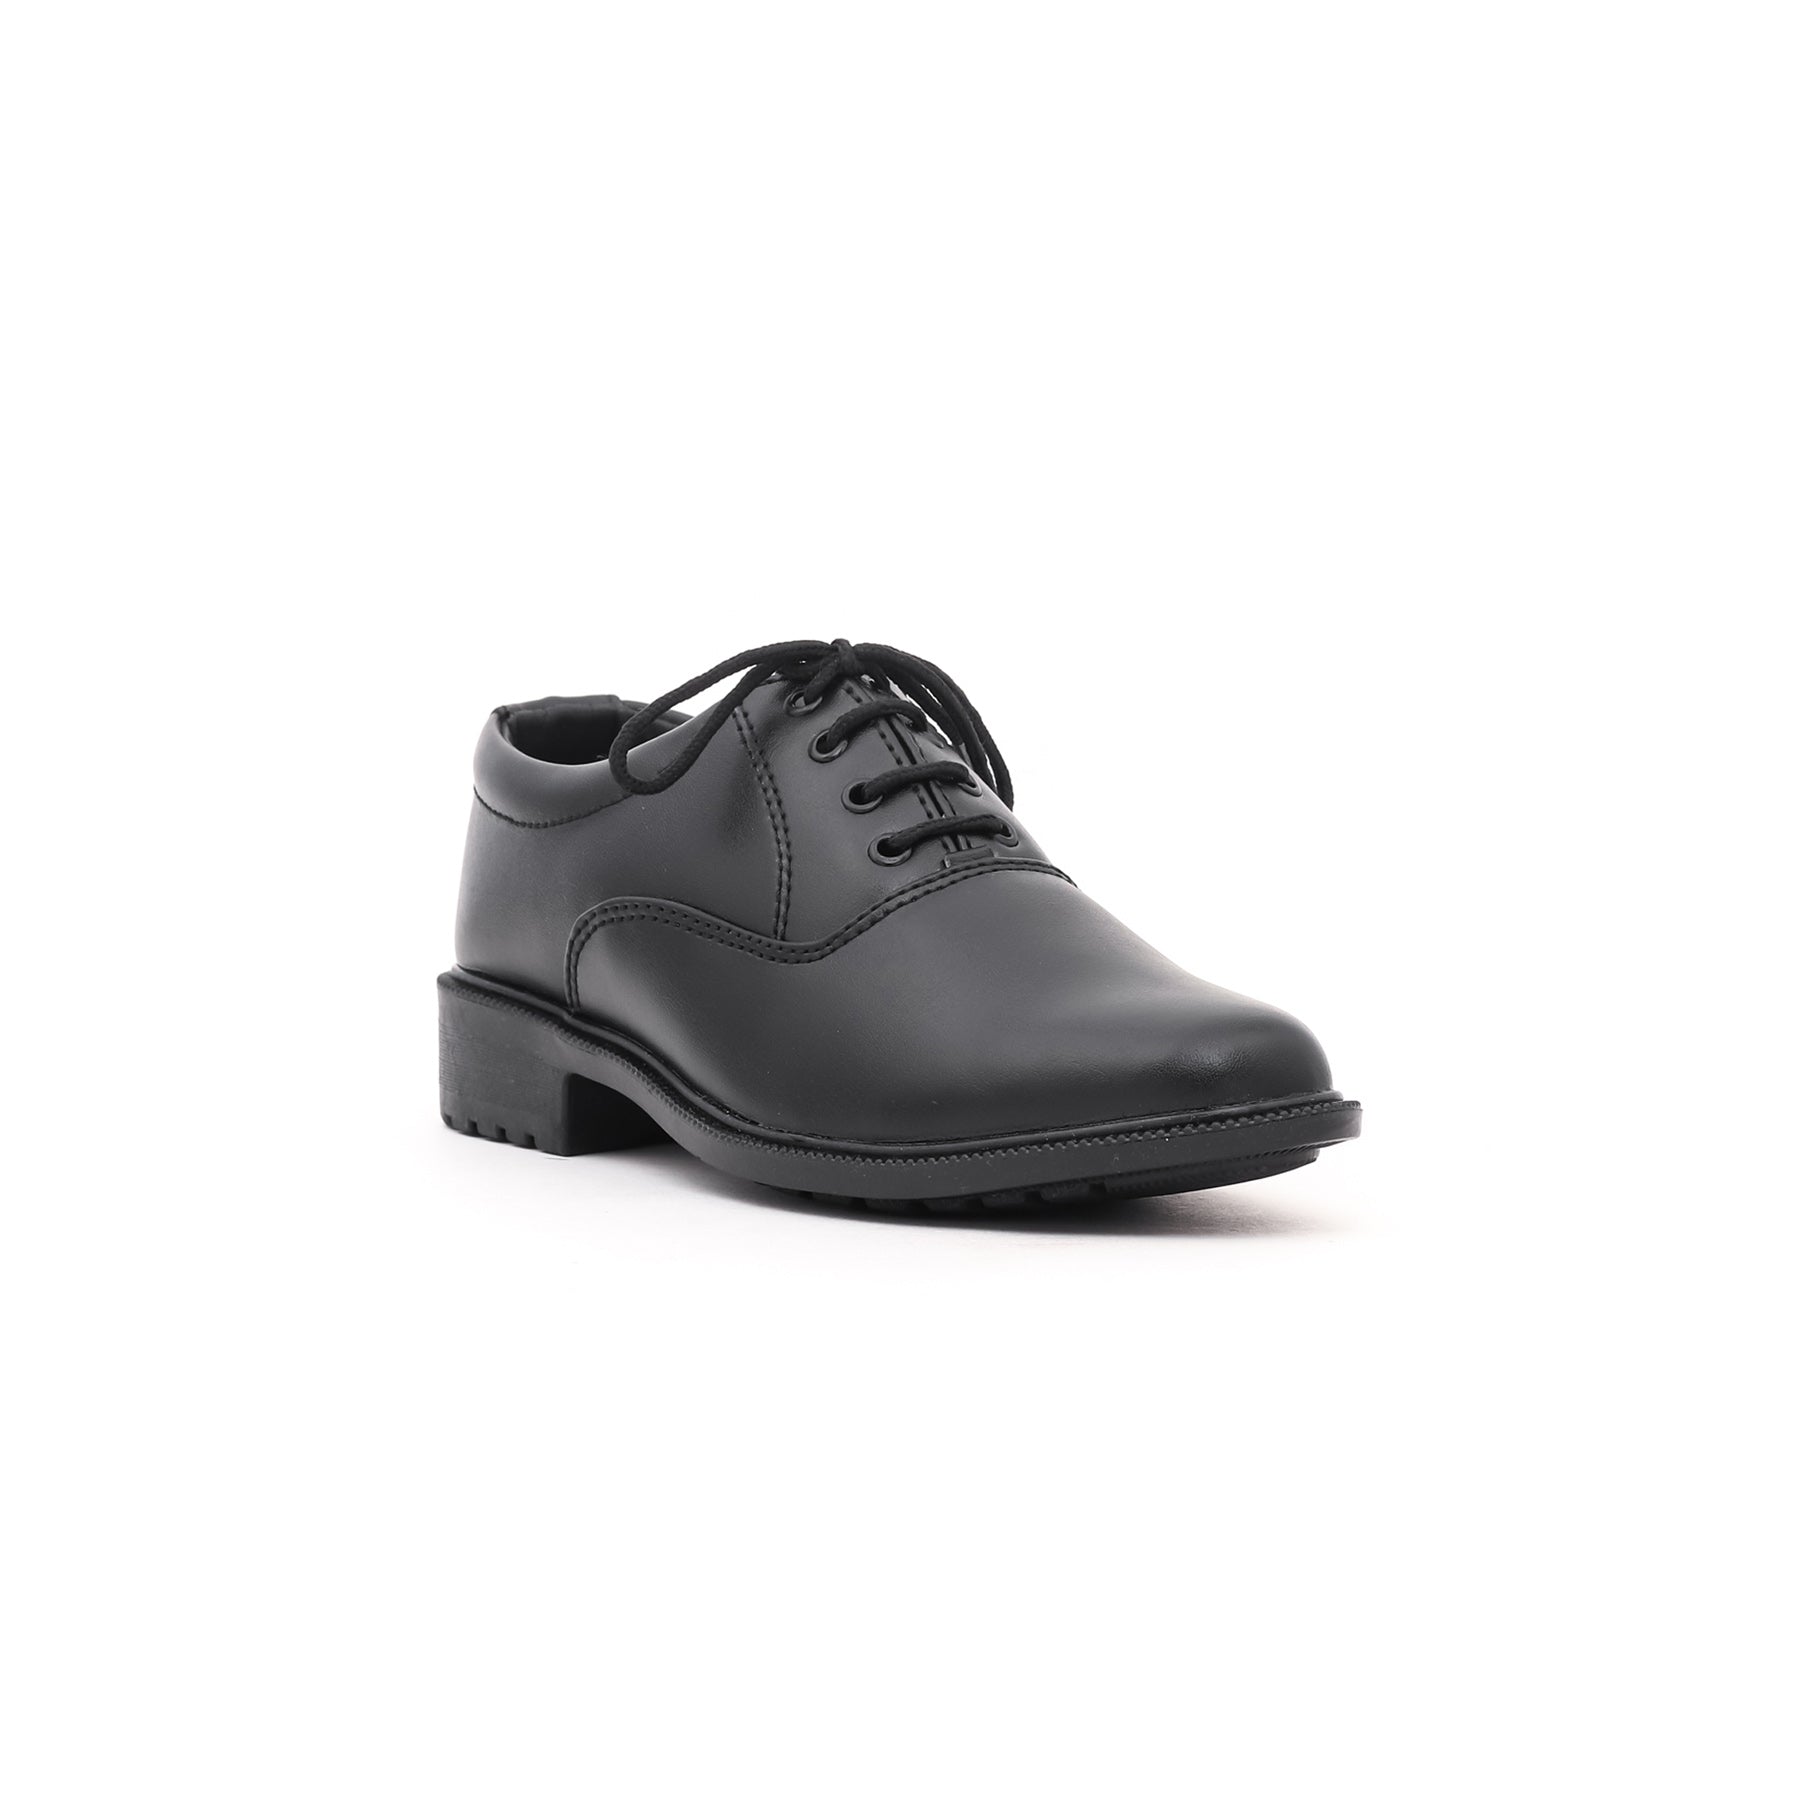 Boys Black School Shoes SK1054